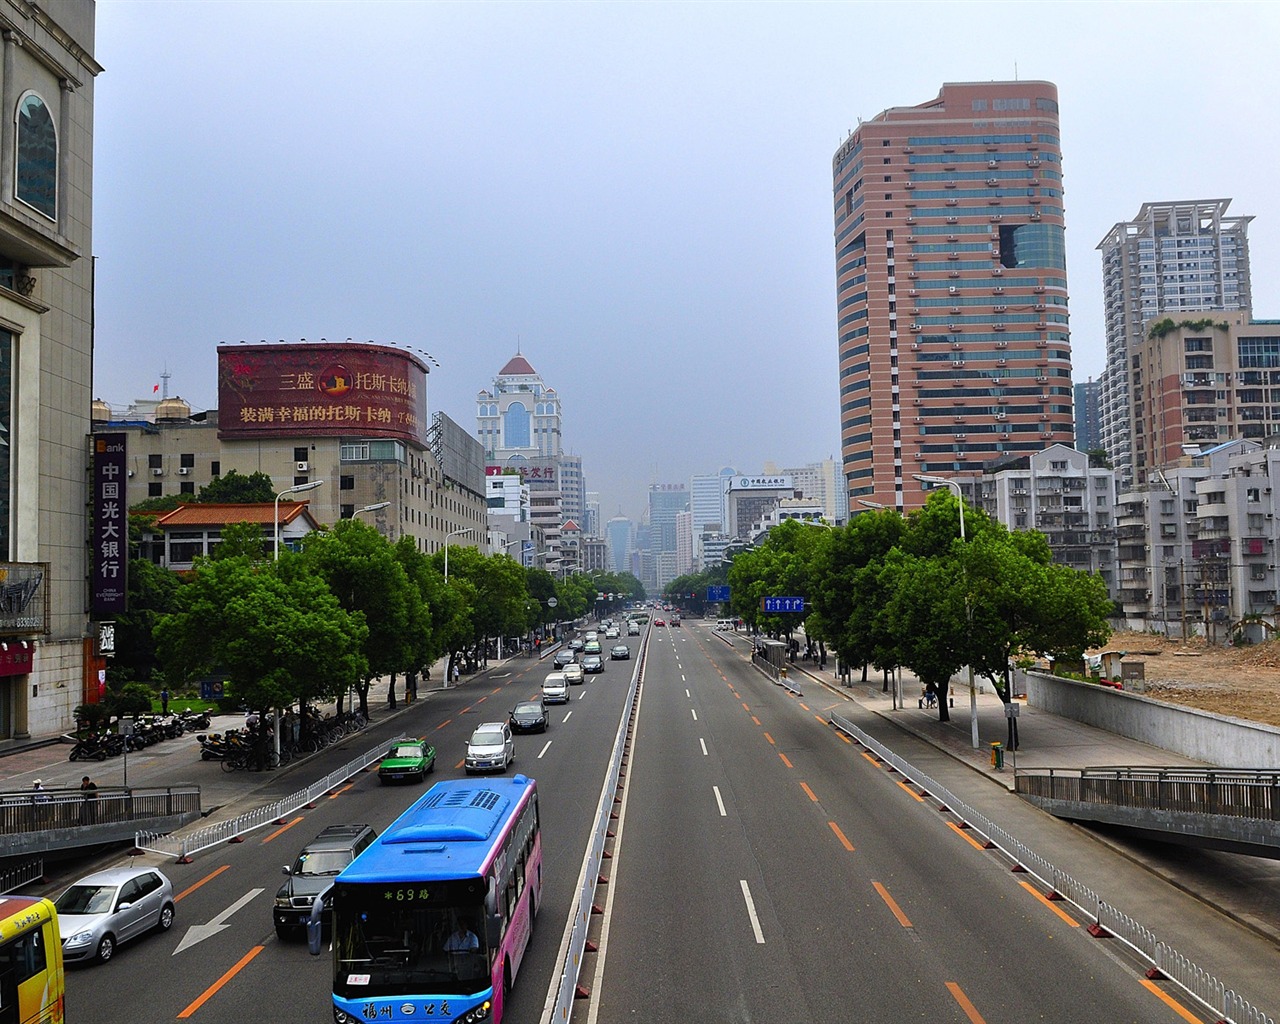 Fuzhou calle con el disparo (foto de Obras del cambio) #2 - 1280x1024